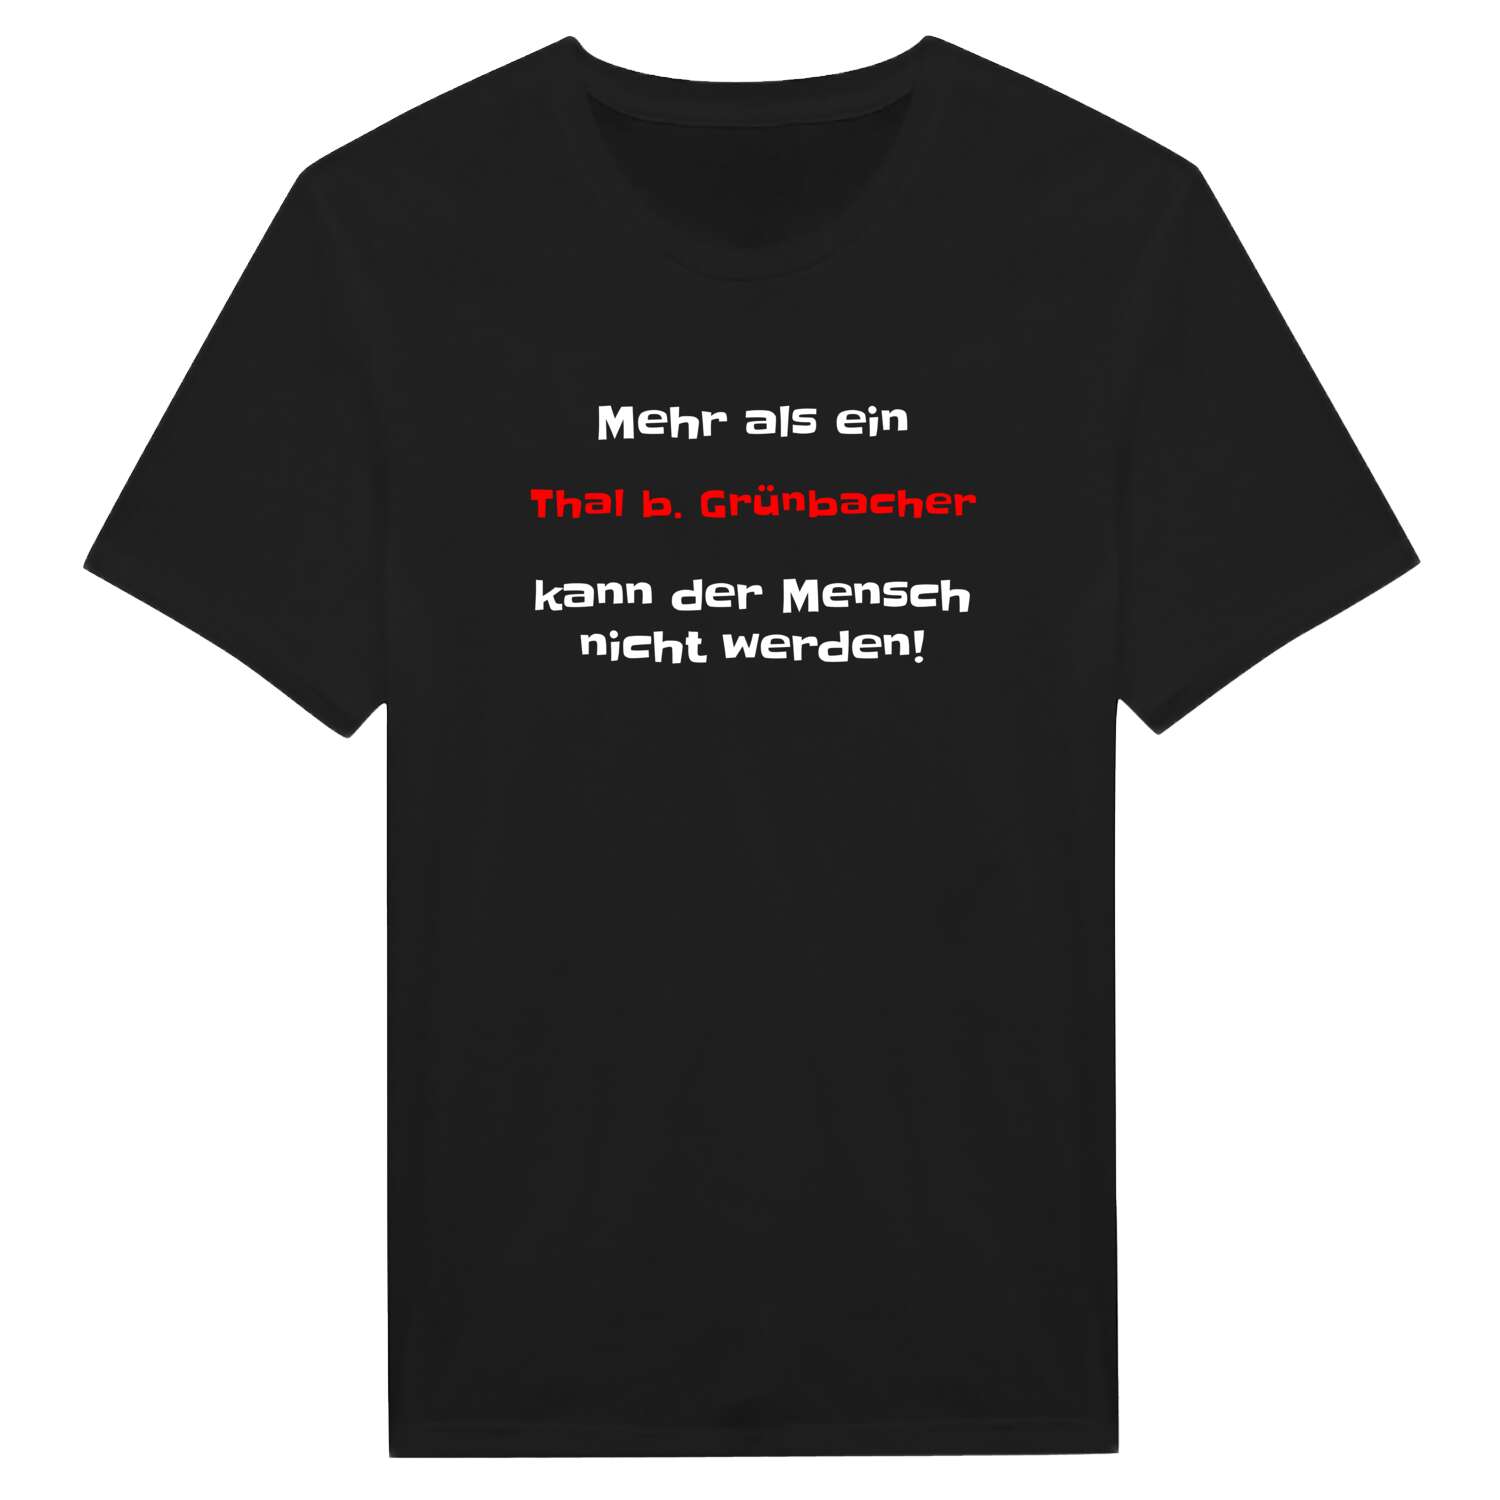 Thal b. Grünbach T-Shirt »Mehr als ein«